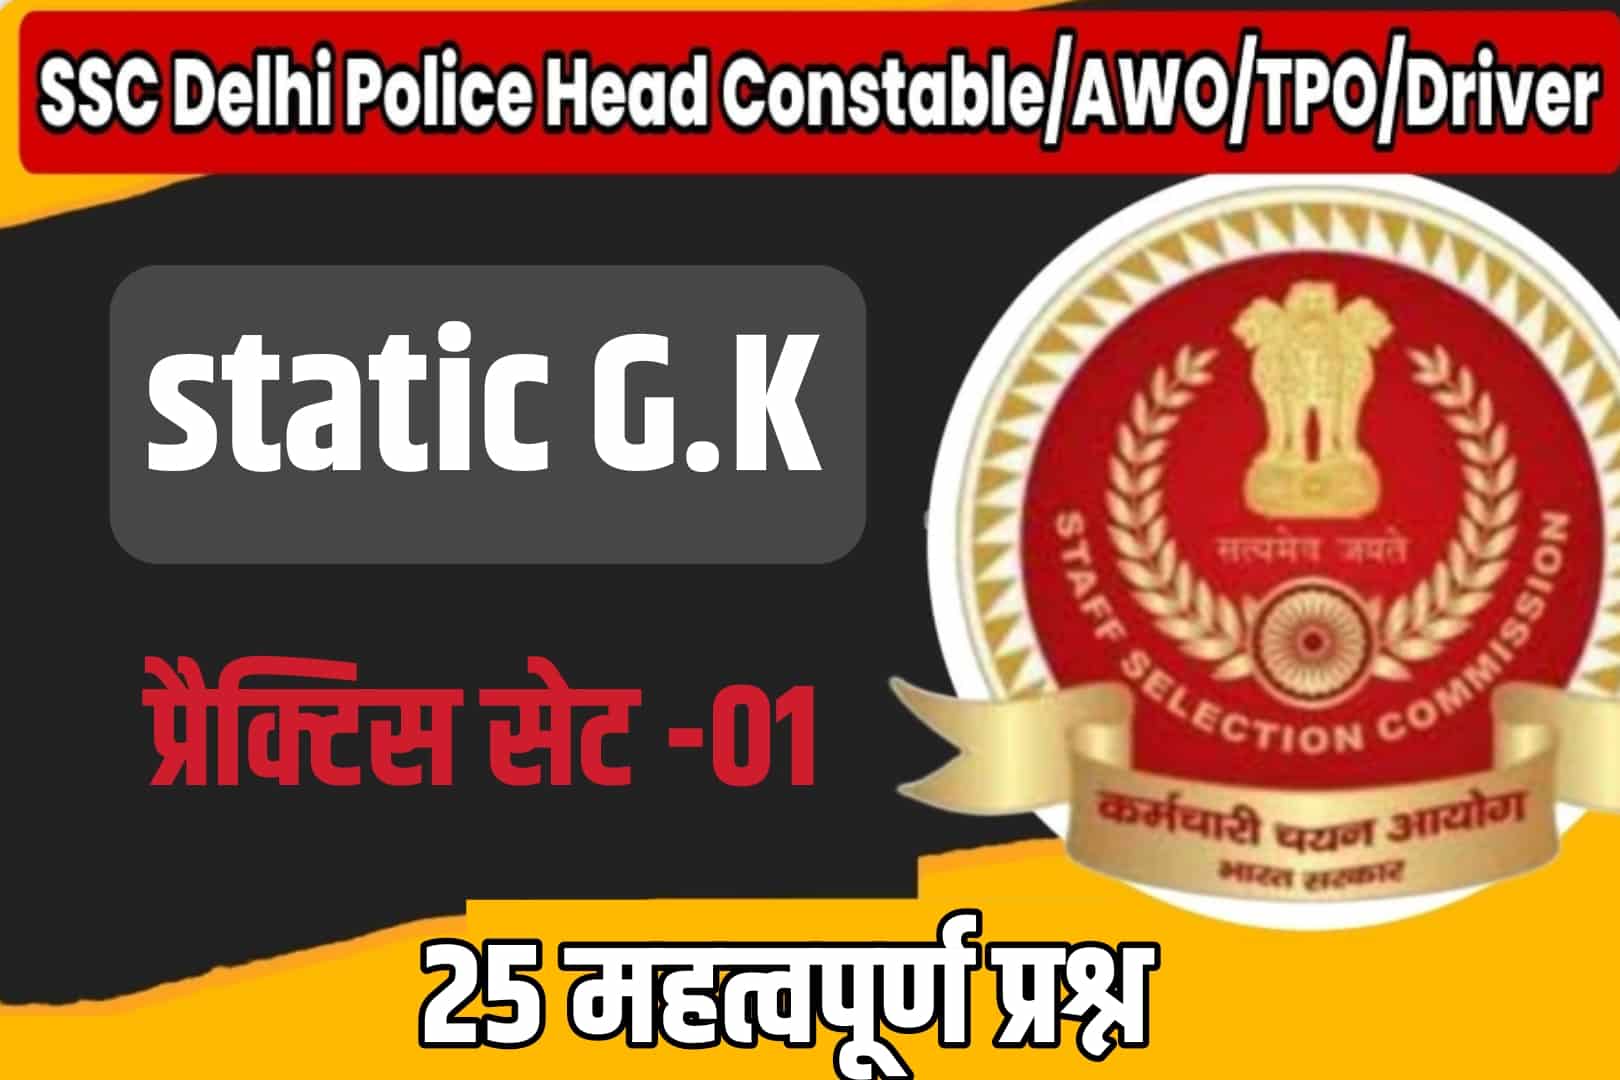 SSC Delhi Police Head Constable/AWO/TPO/Driver Static GK Practice Set 01 | परीक्षा में शामिल होने से पूर्व अवश्य पढ़ लें ये मुख्य प्रश्न